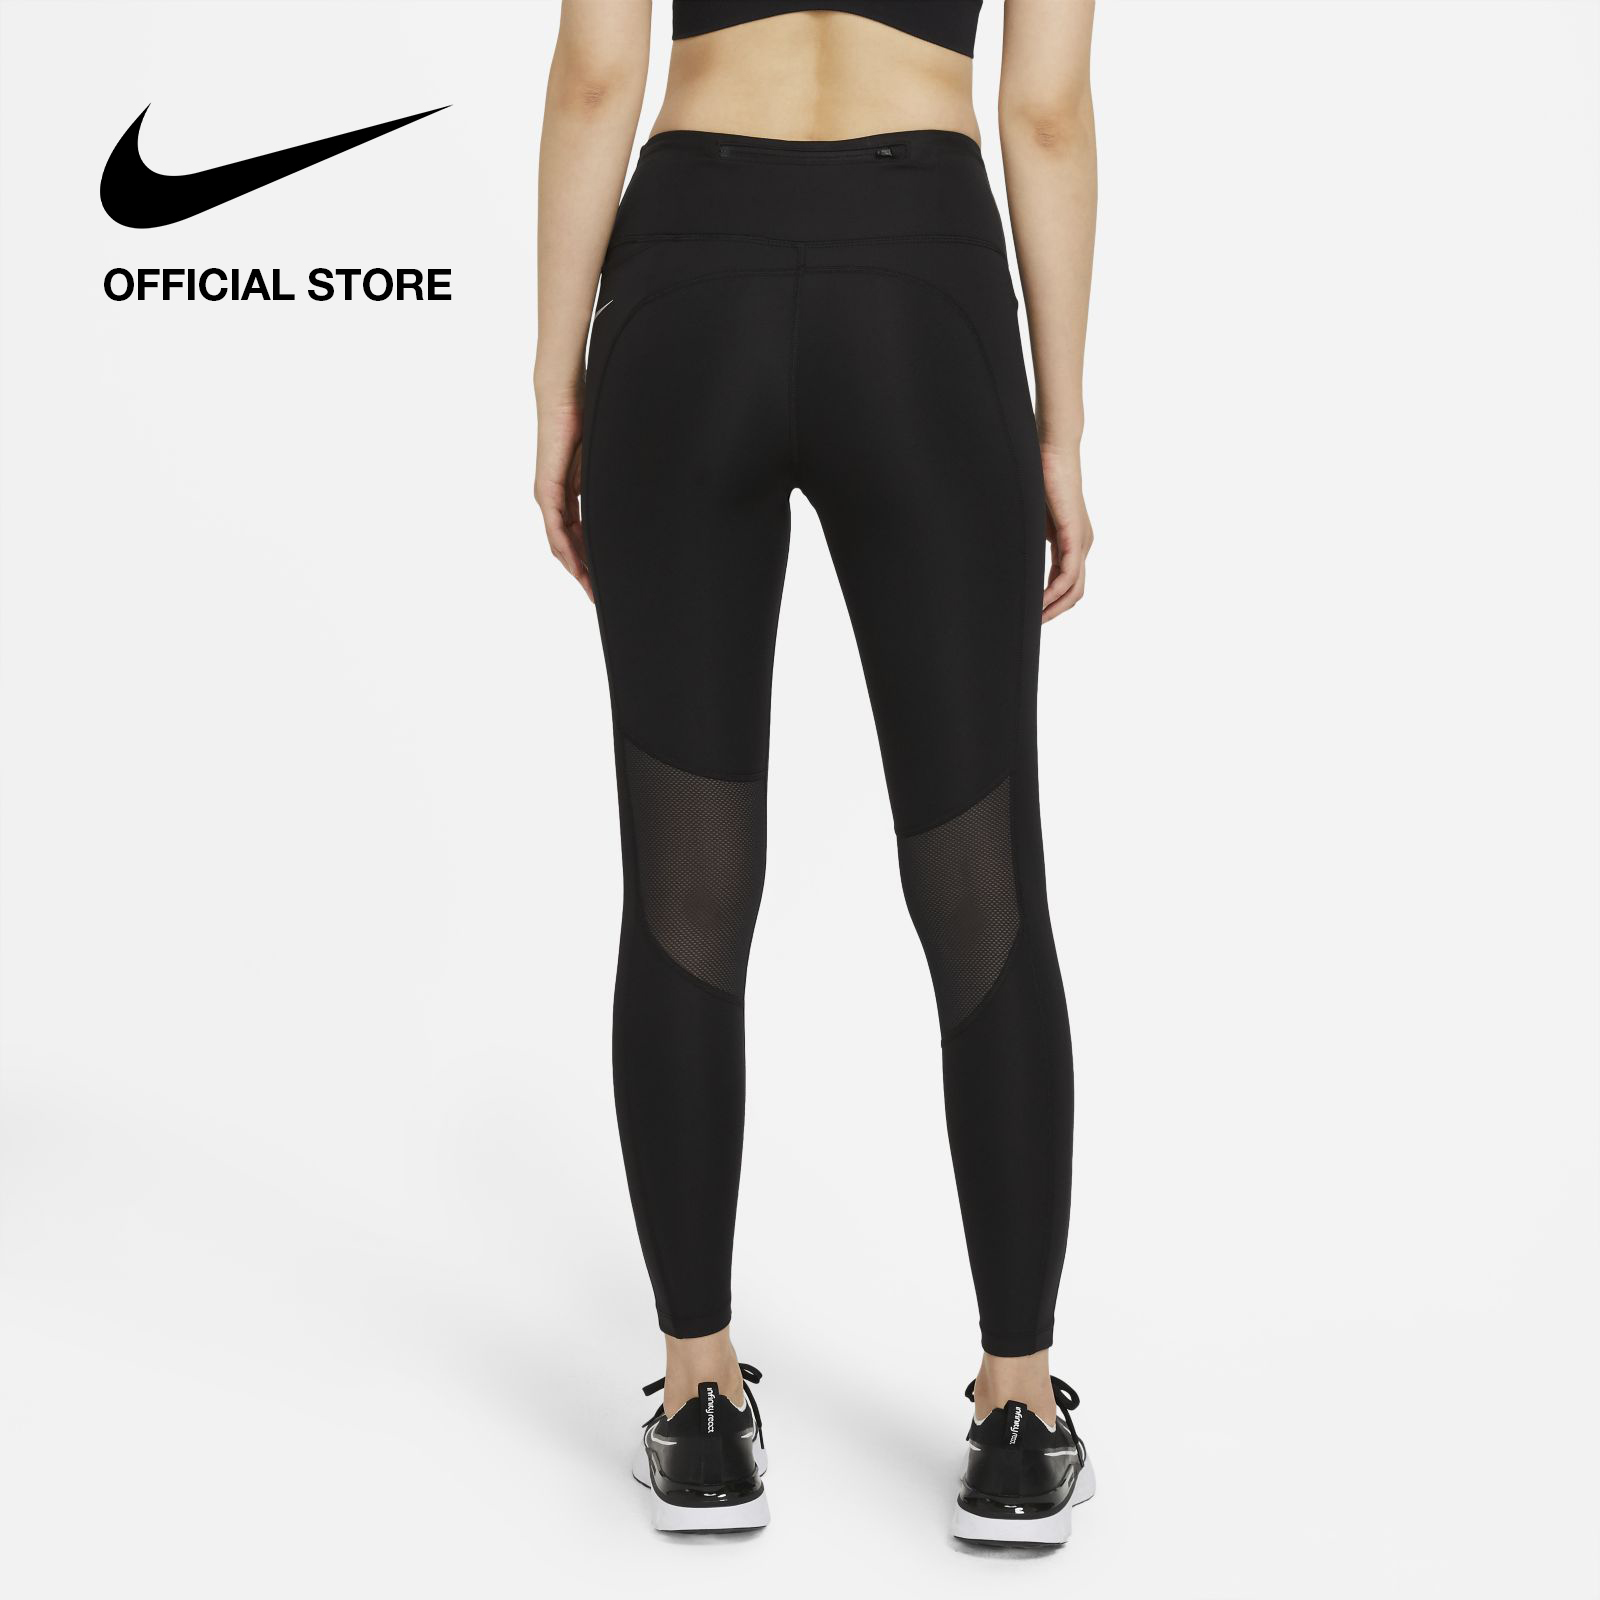 Nike Women's Epic Fast Running Legging - Black ไนกี้ เลกกิ้งวิ่งผู้หญิง อีพิค ฟาสต์ - สีดำ